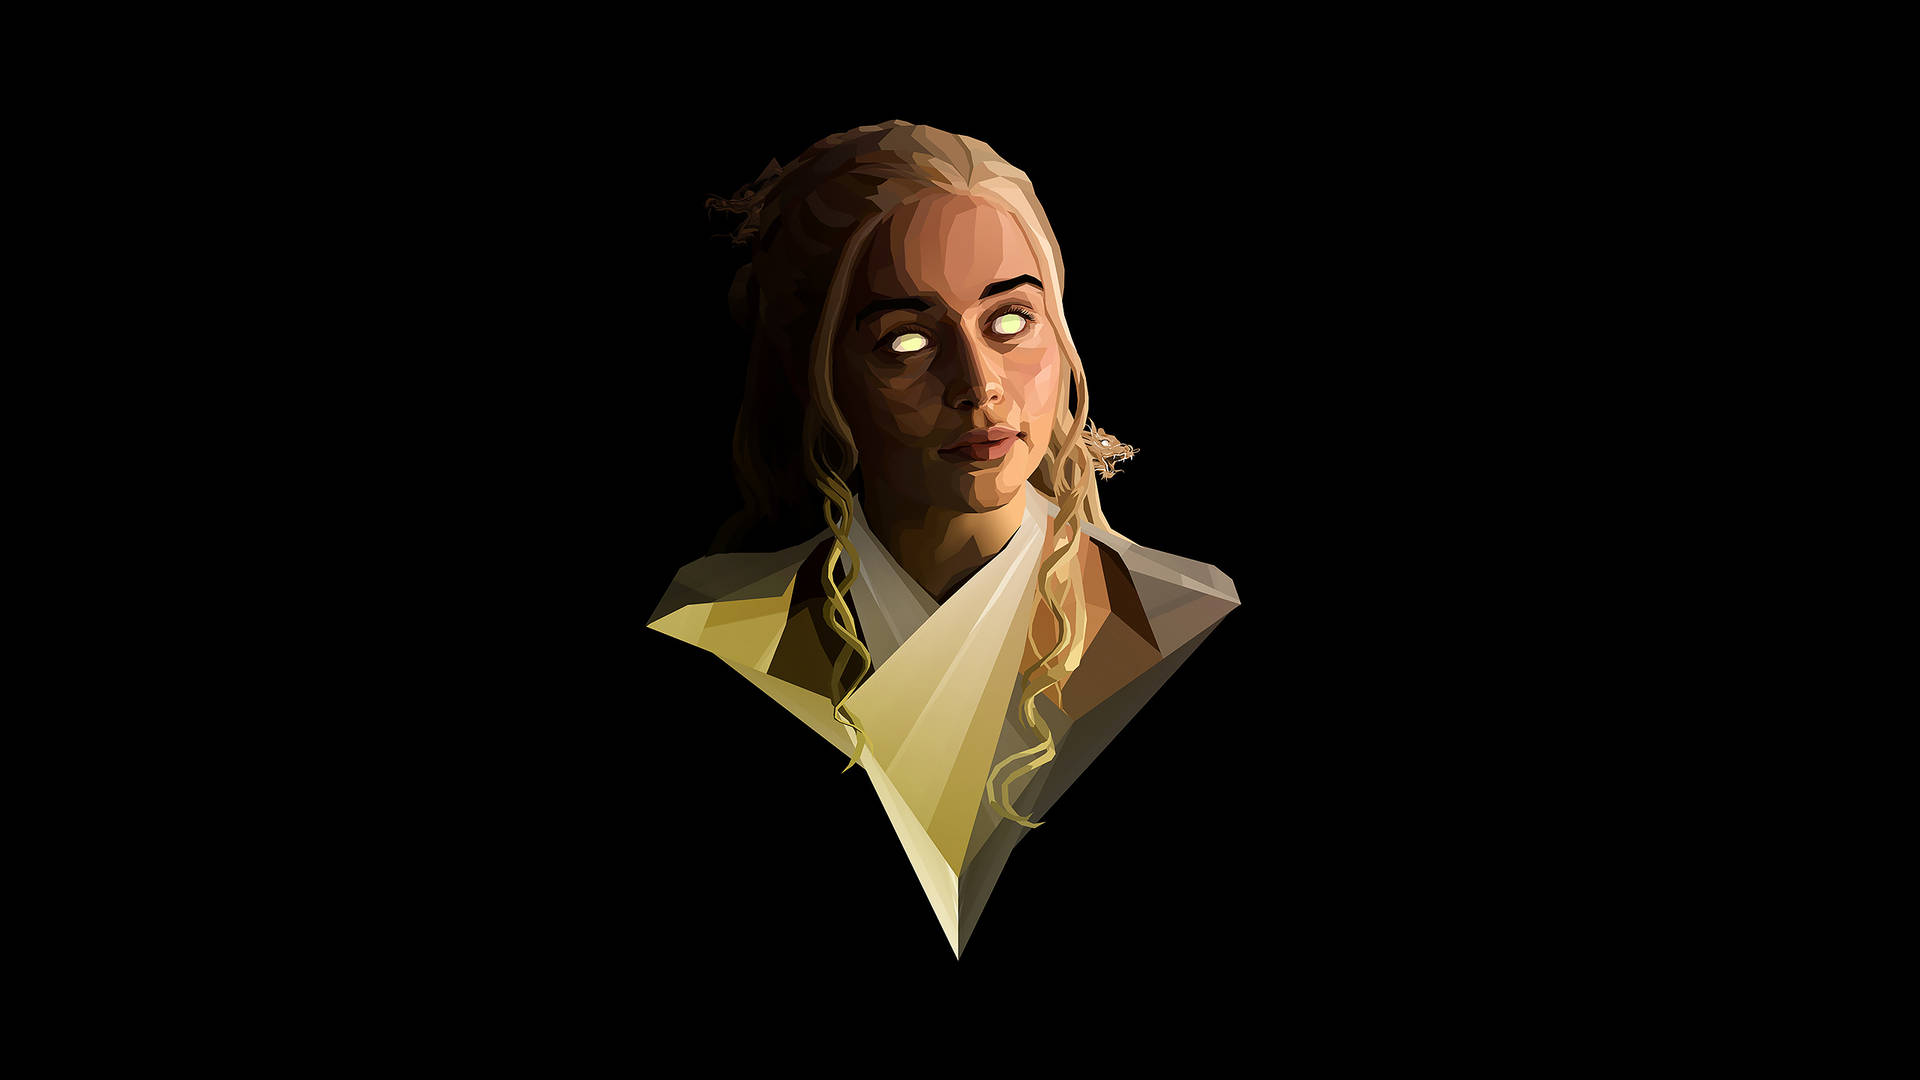 Polygon Art Queen Daenerys